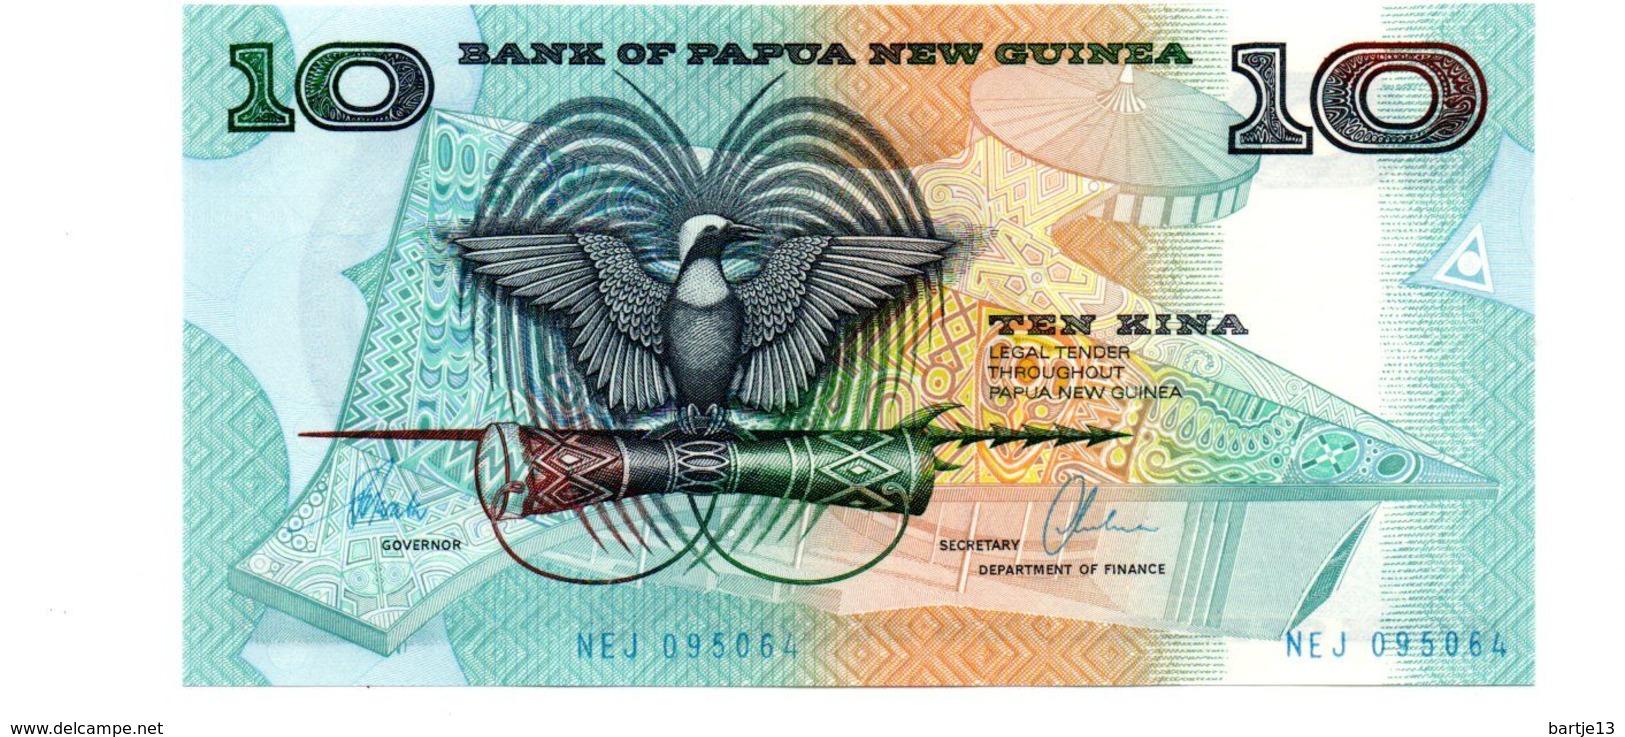 PAPOEA NIEUW GUINEA 10 KINA PICK 9d UNCIRCULATED - Papouasie-Nouvelle-Guinée